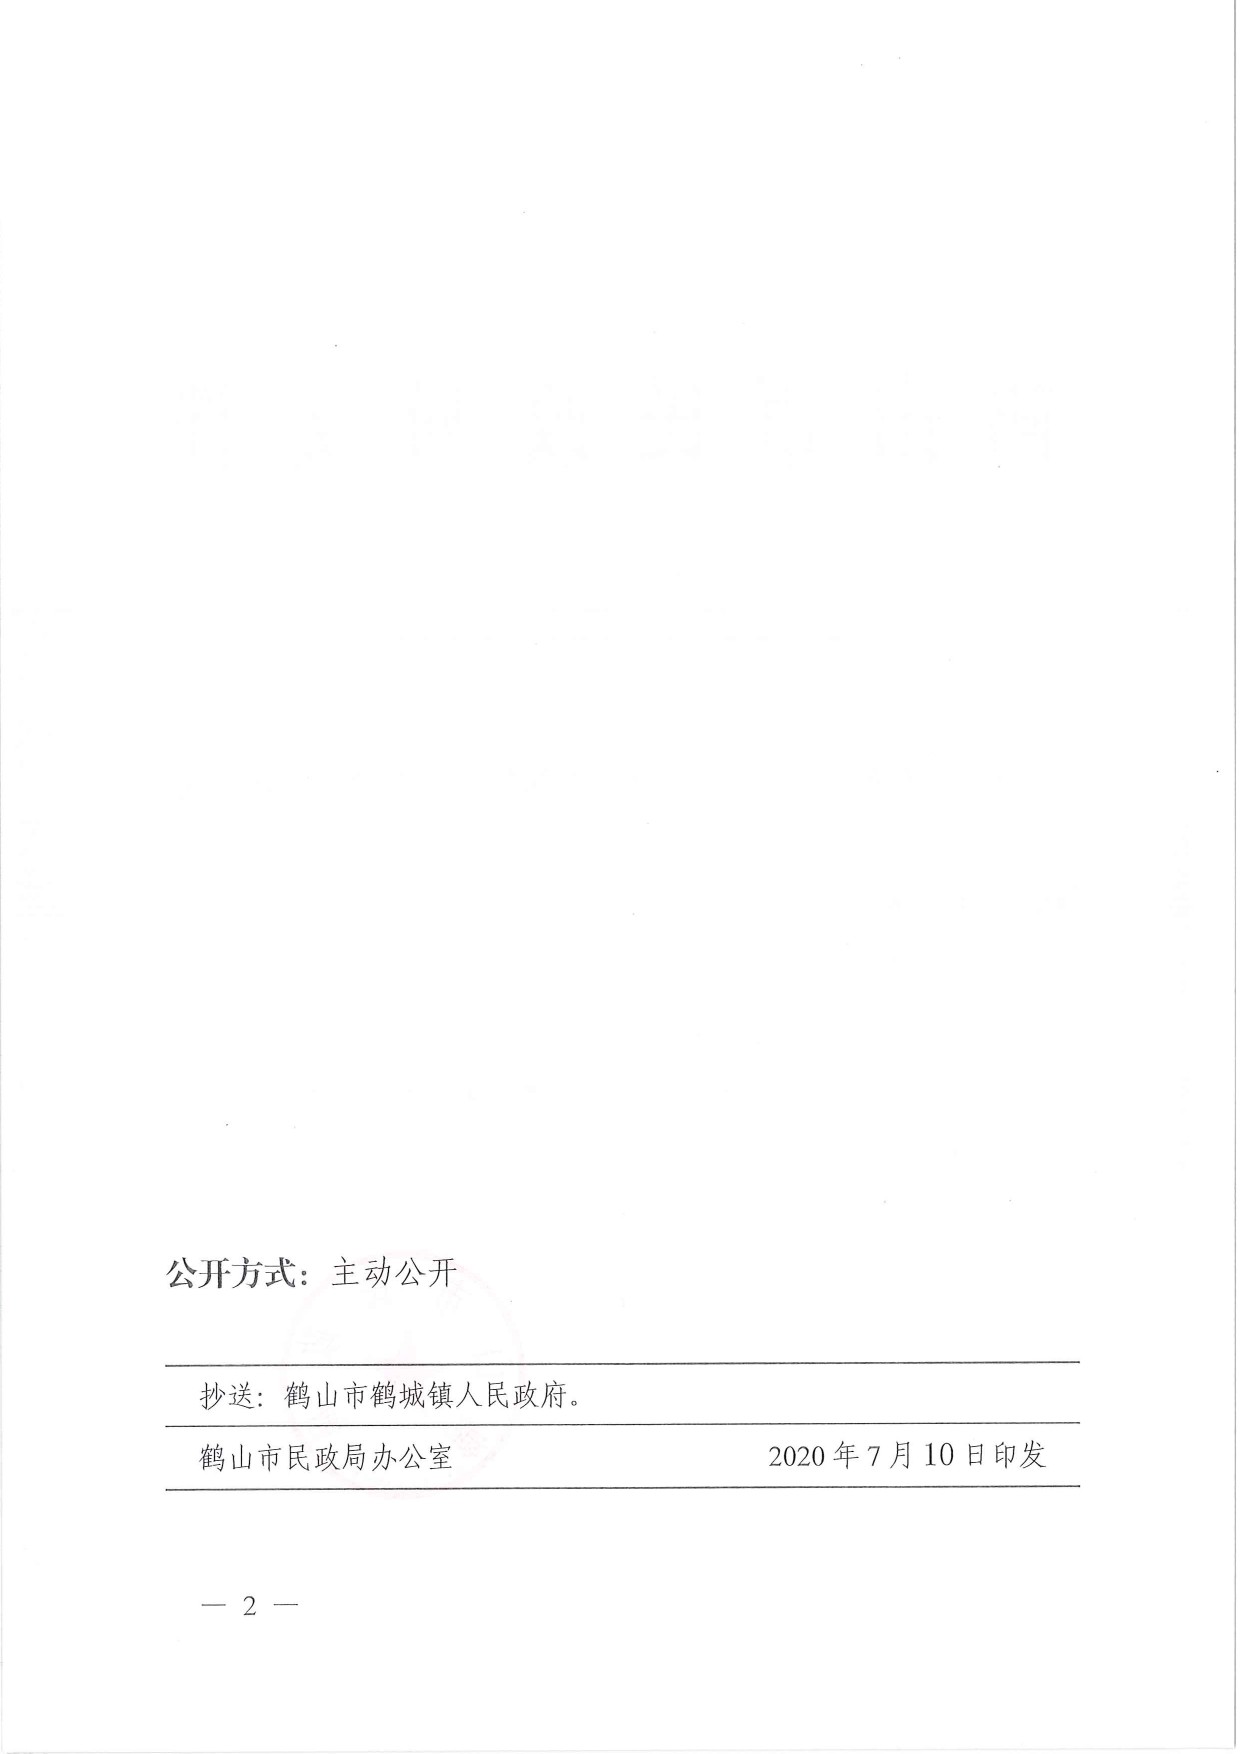 鹤民社〔2020〕36号关于准予鹤山市鹤城禽业协会注销登记的批复-2.jpg